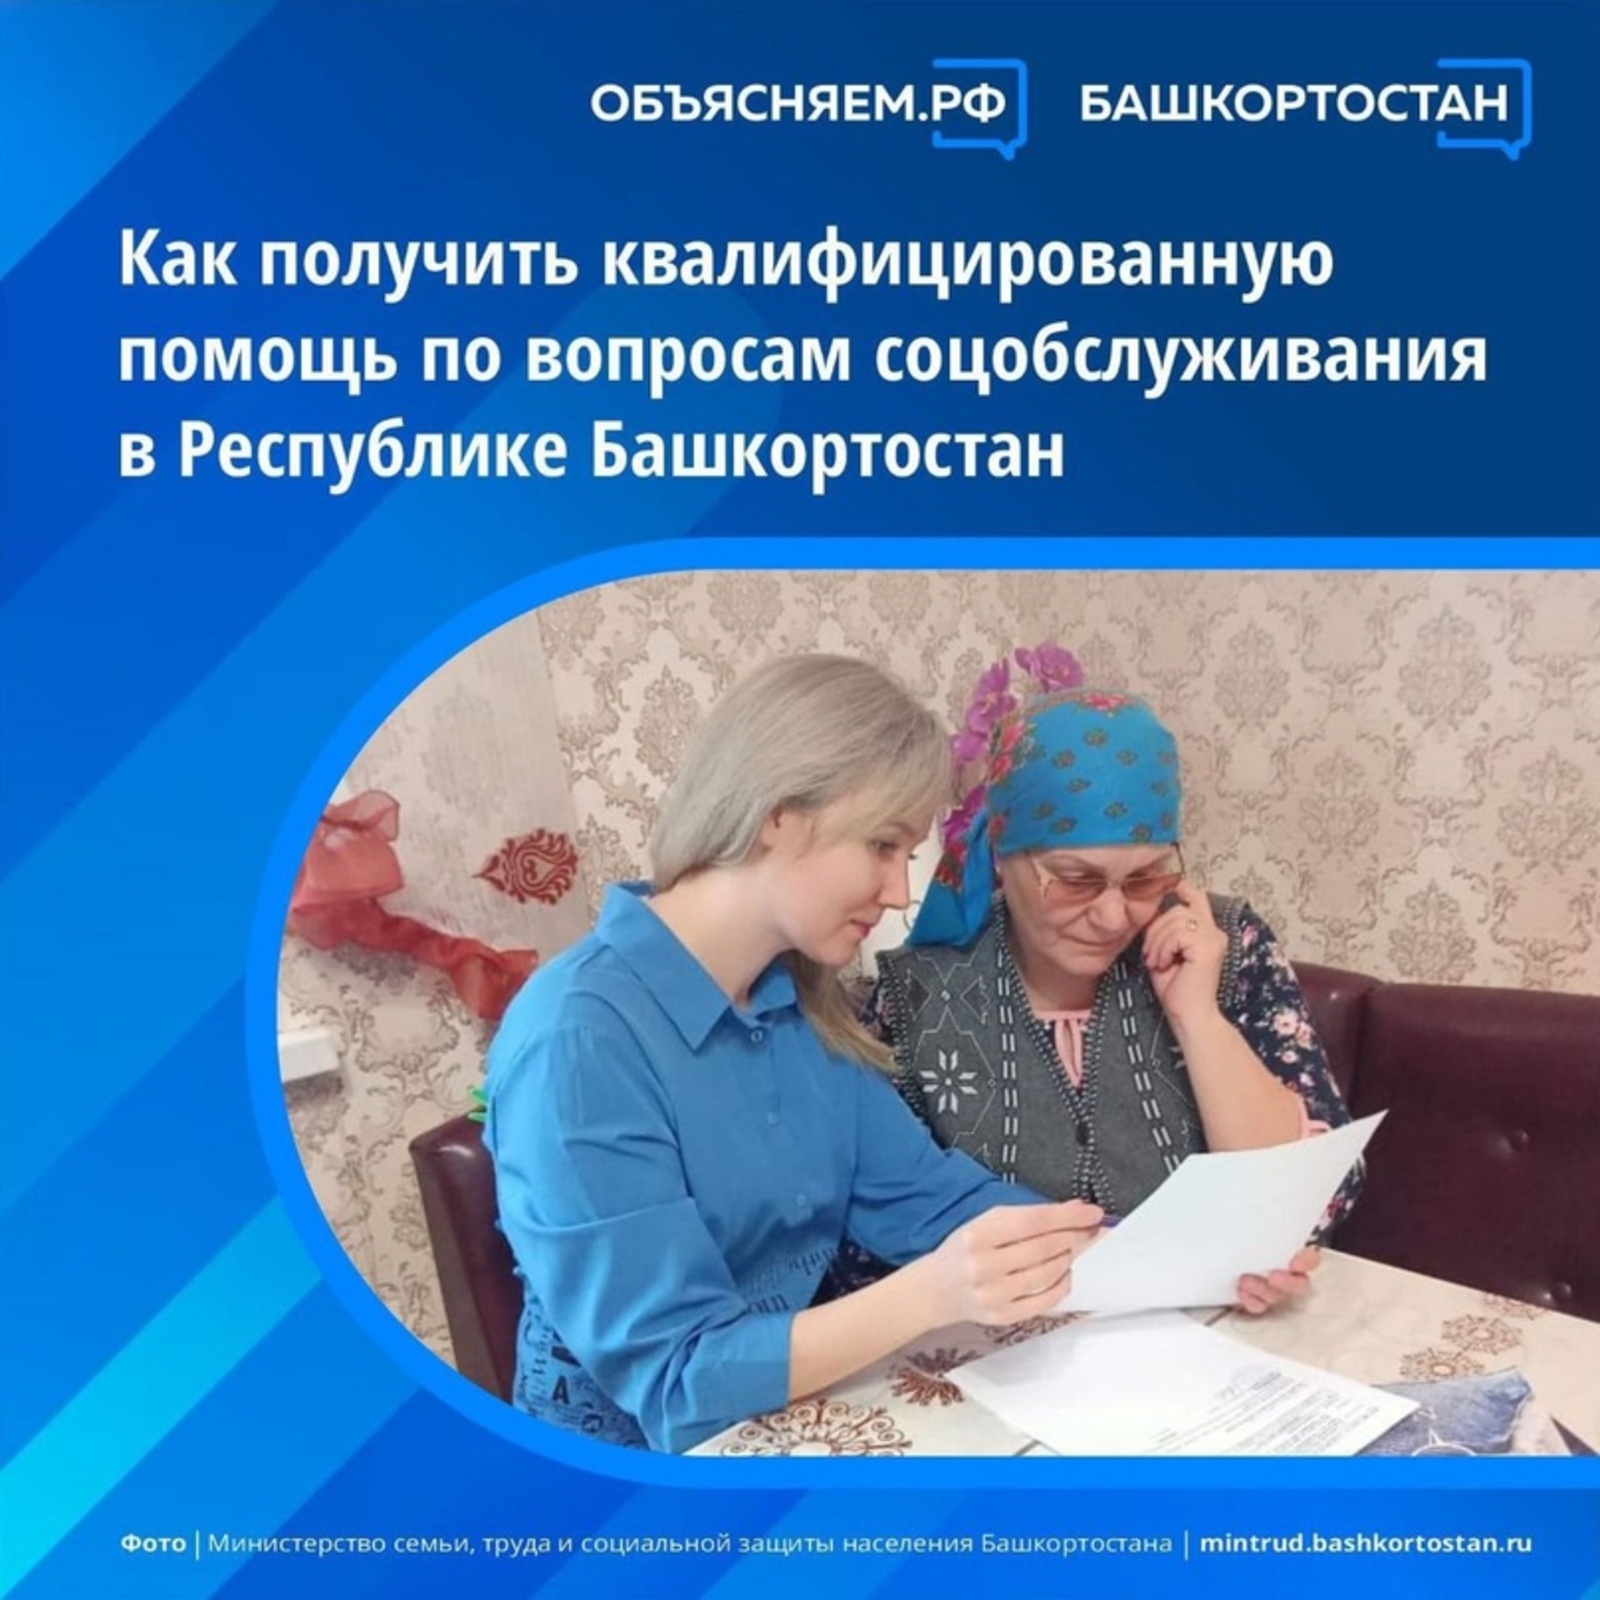 Как получить квалифицированную помощь по вопросам социального обслуживания в Башкортостане